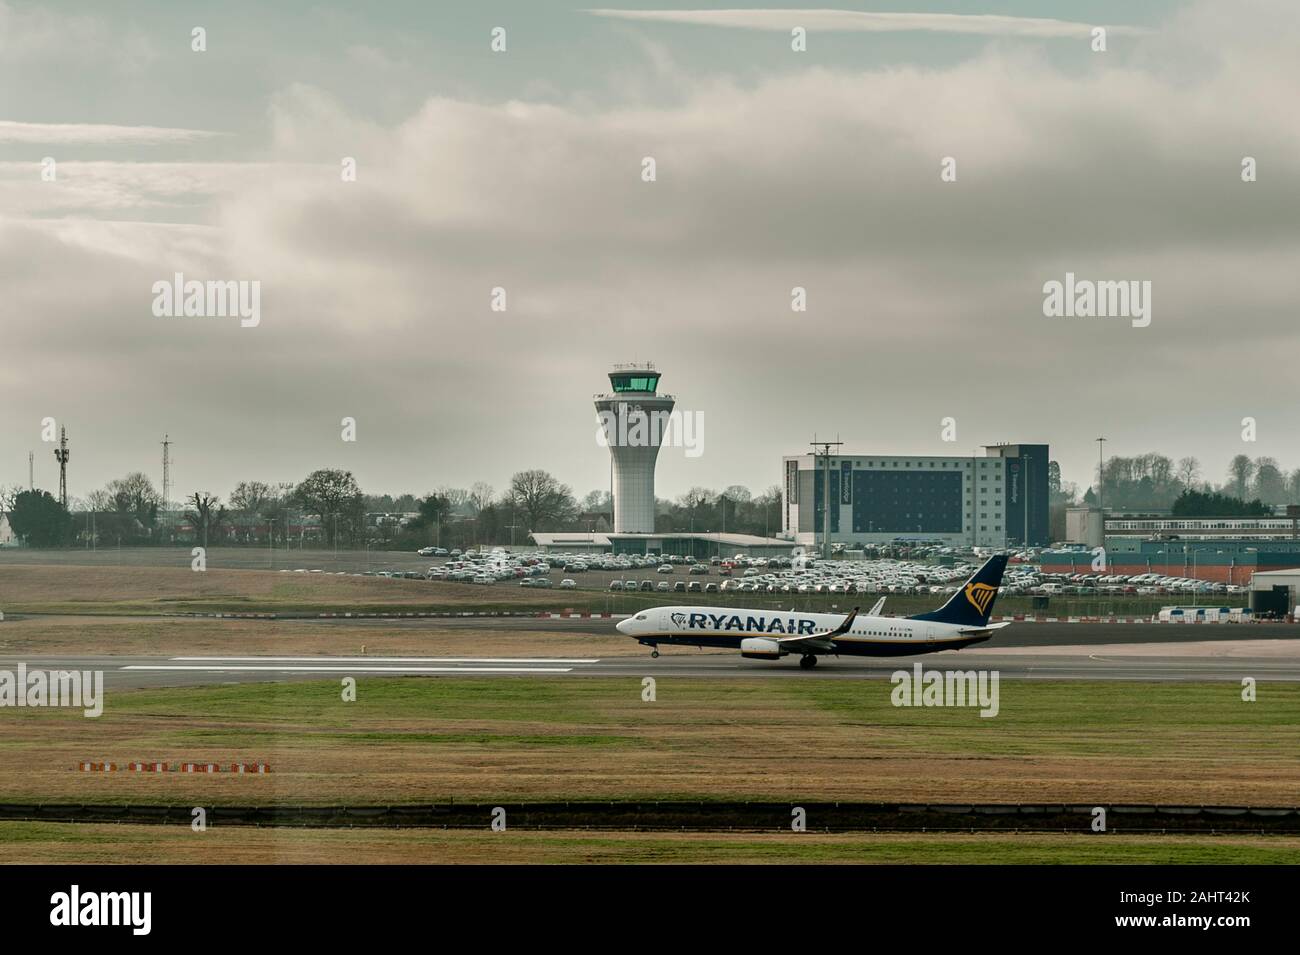 Ryanair Boeing 737 startet unter dem wachsamen Auge des Air Traffic Control Tower am Flughafen Birmingham, West Midlands, Großbritannien mit kopieren. Stockfoto